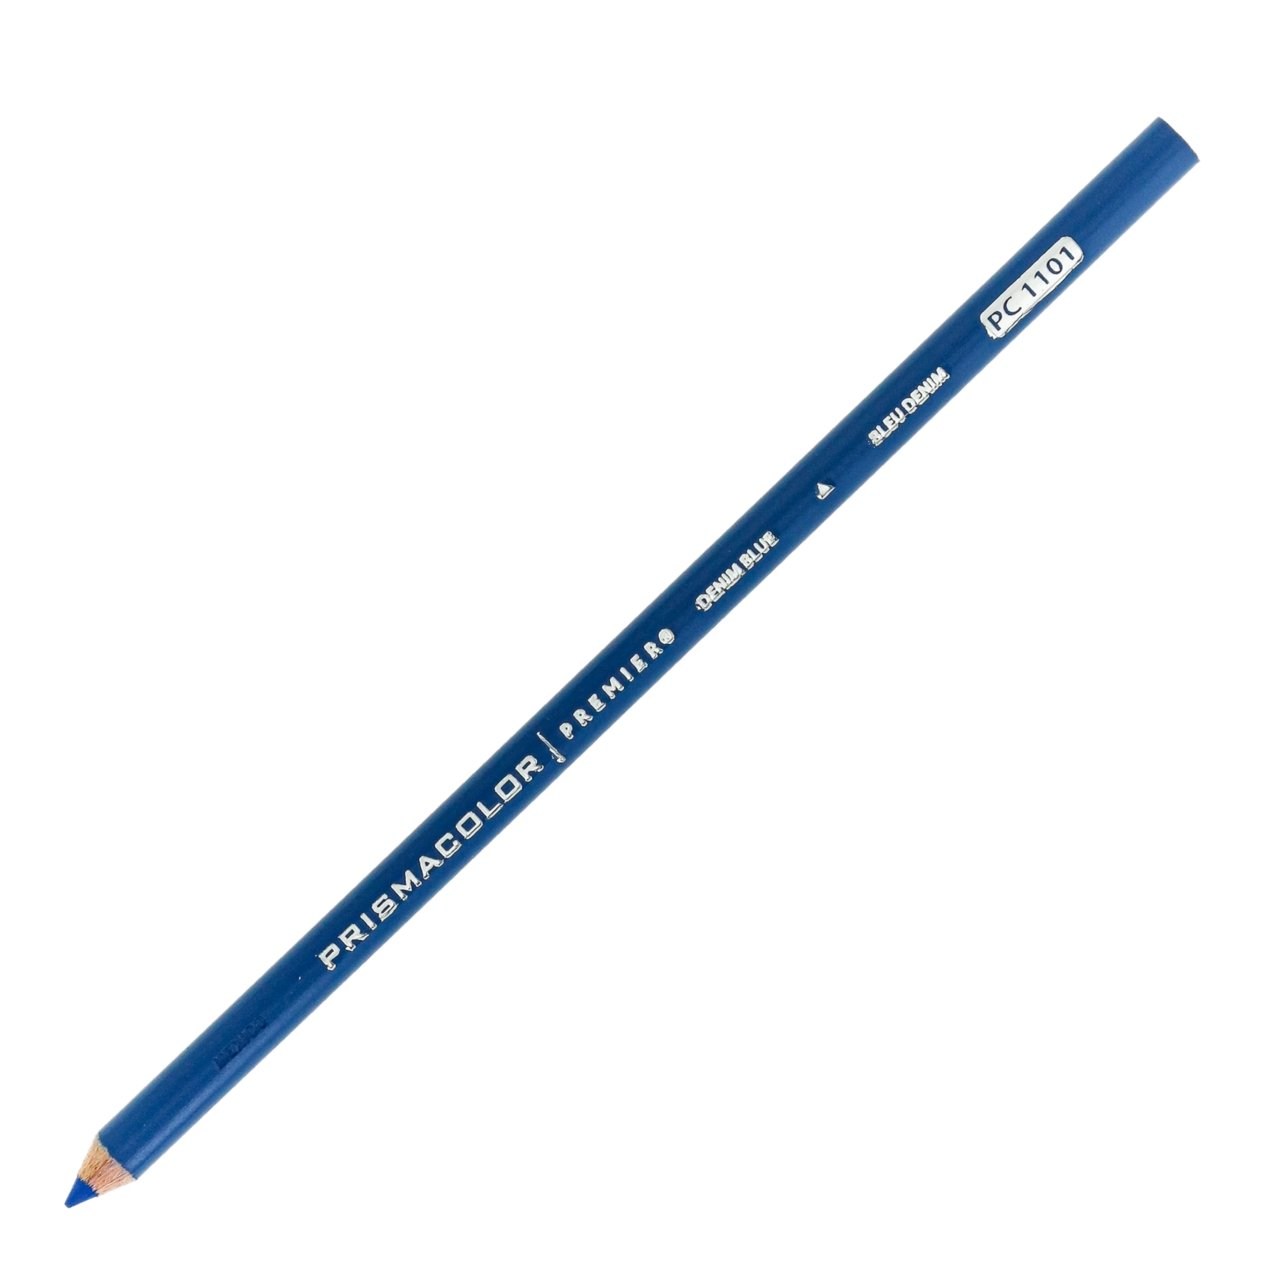 Prismacolor Premier Colored Pencil - Denim Blue 1101 - merriartist.com